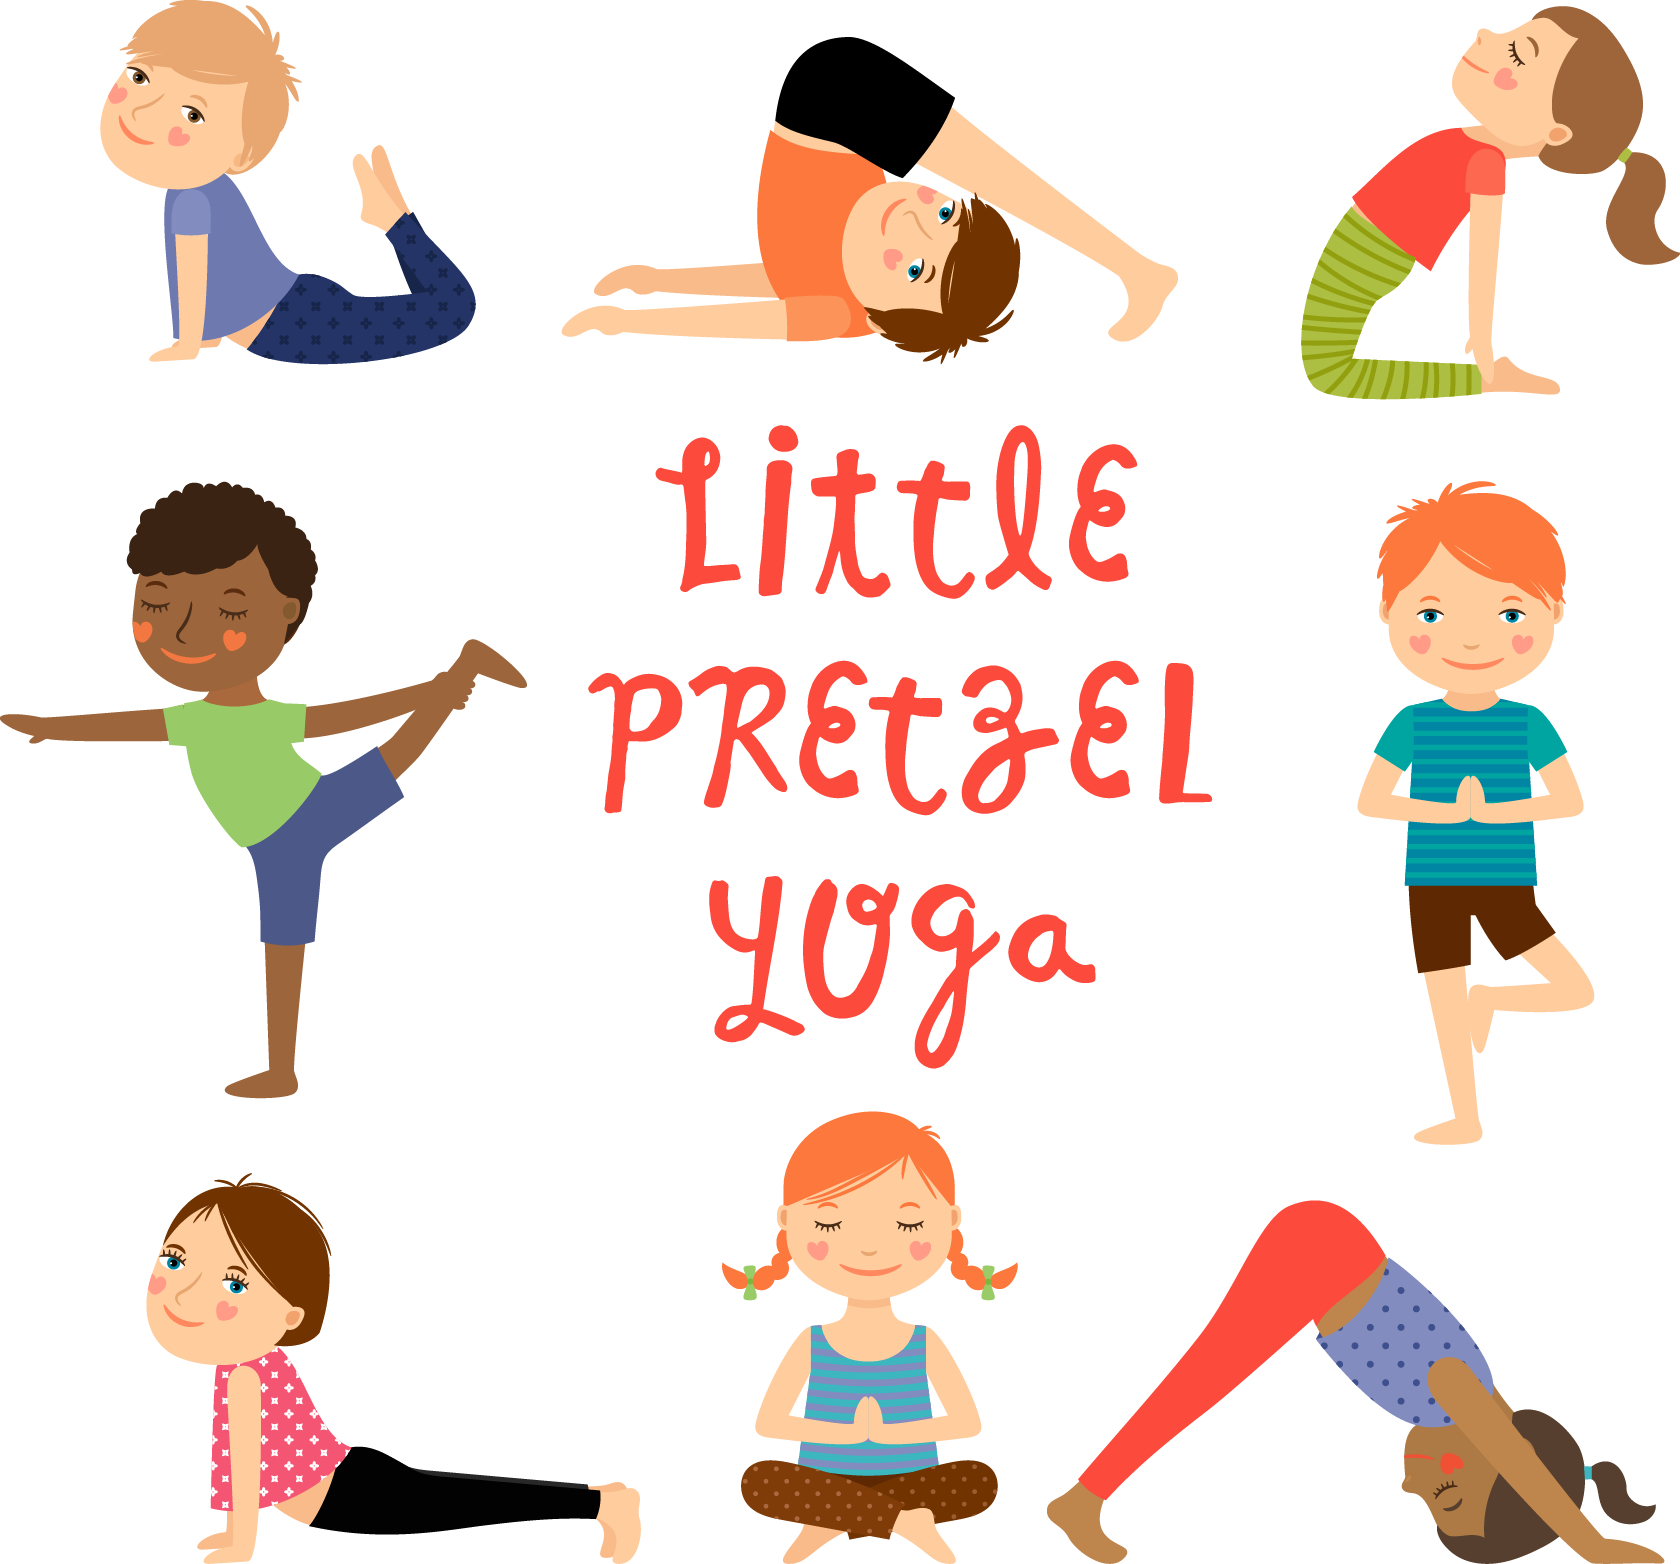 San Francisco Kids Yoga, Little Pretzel Yoga